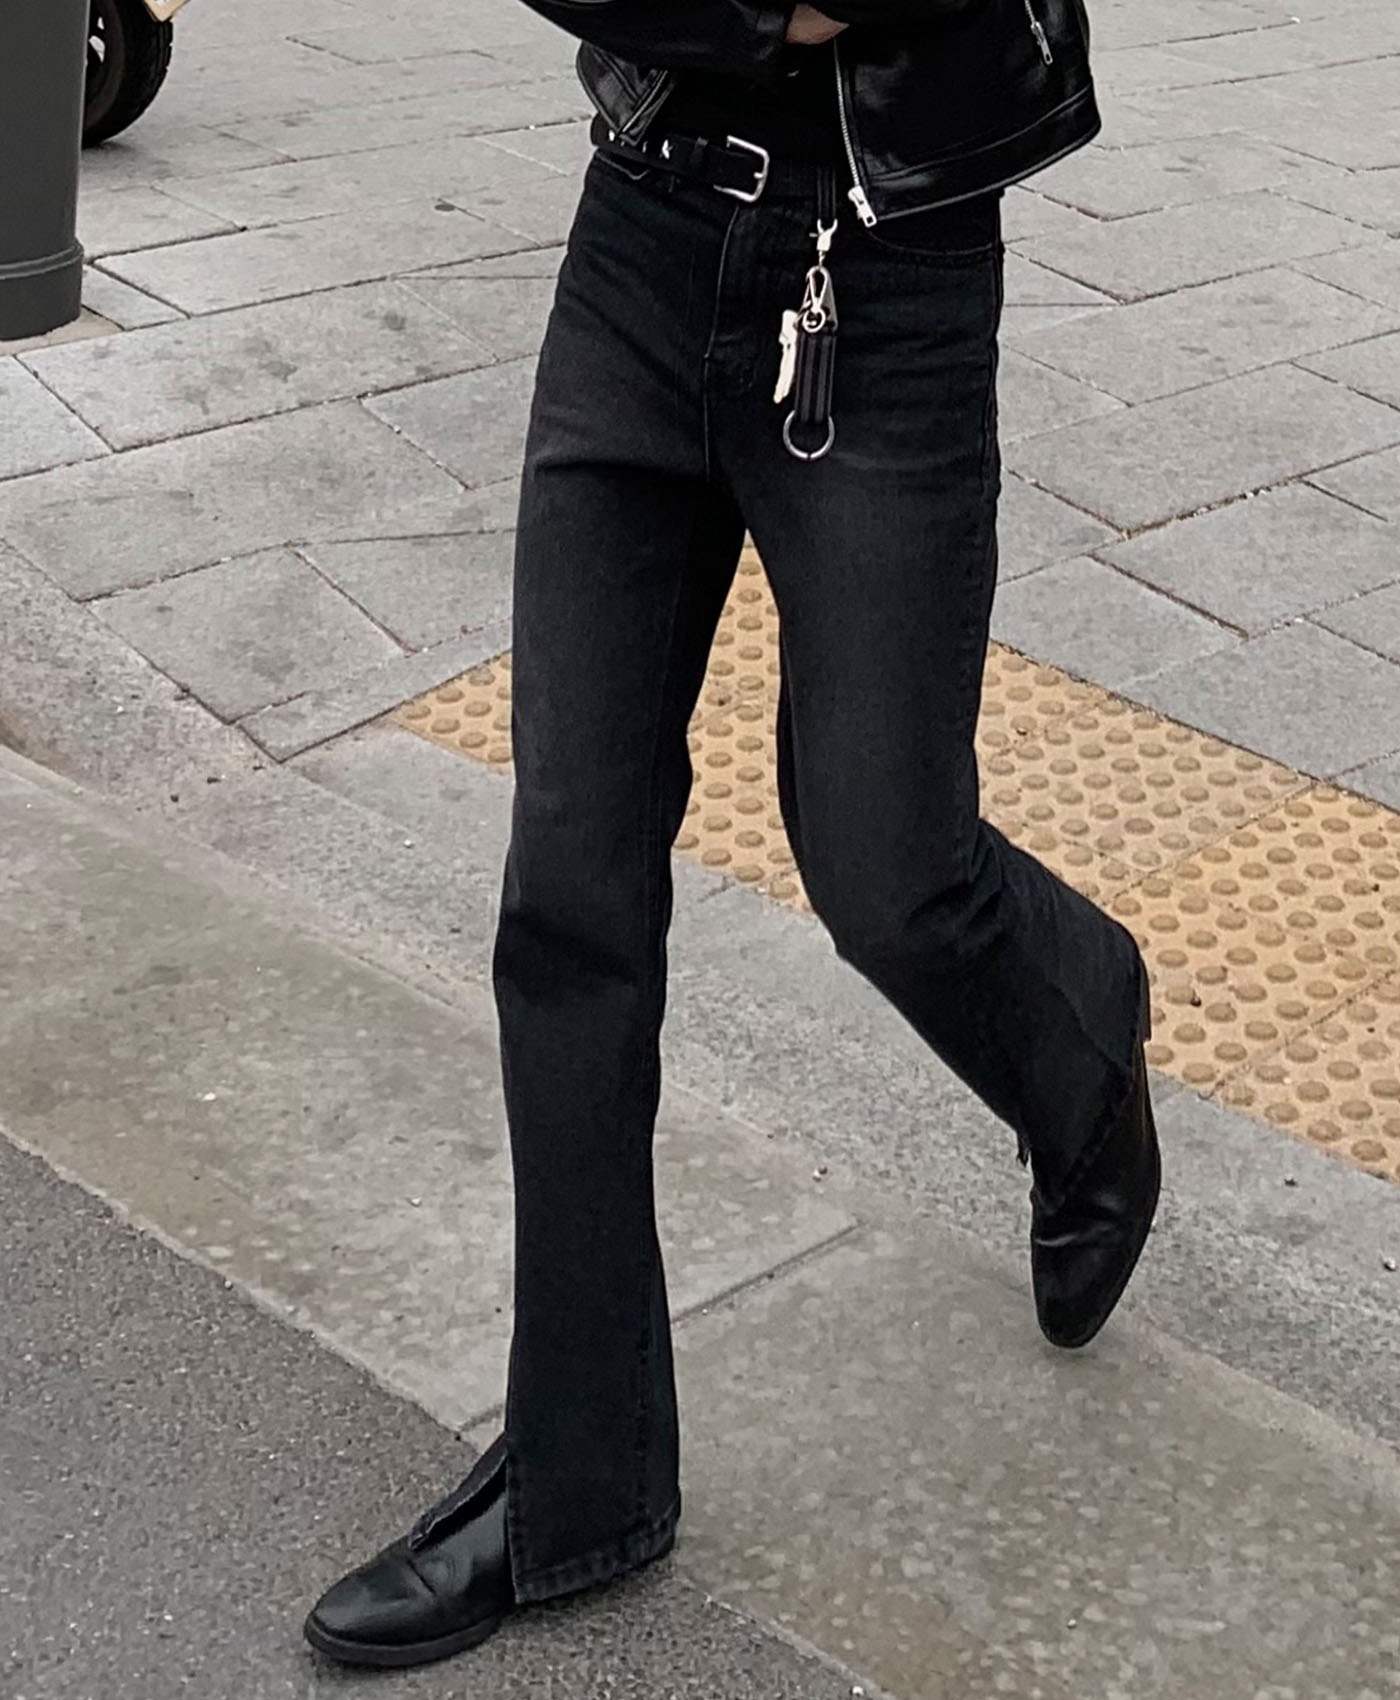 Slit Denim Boots-cut Jeans (black)